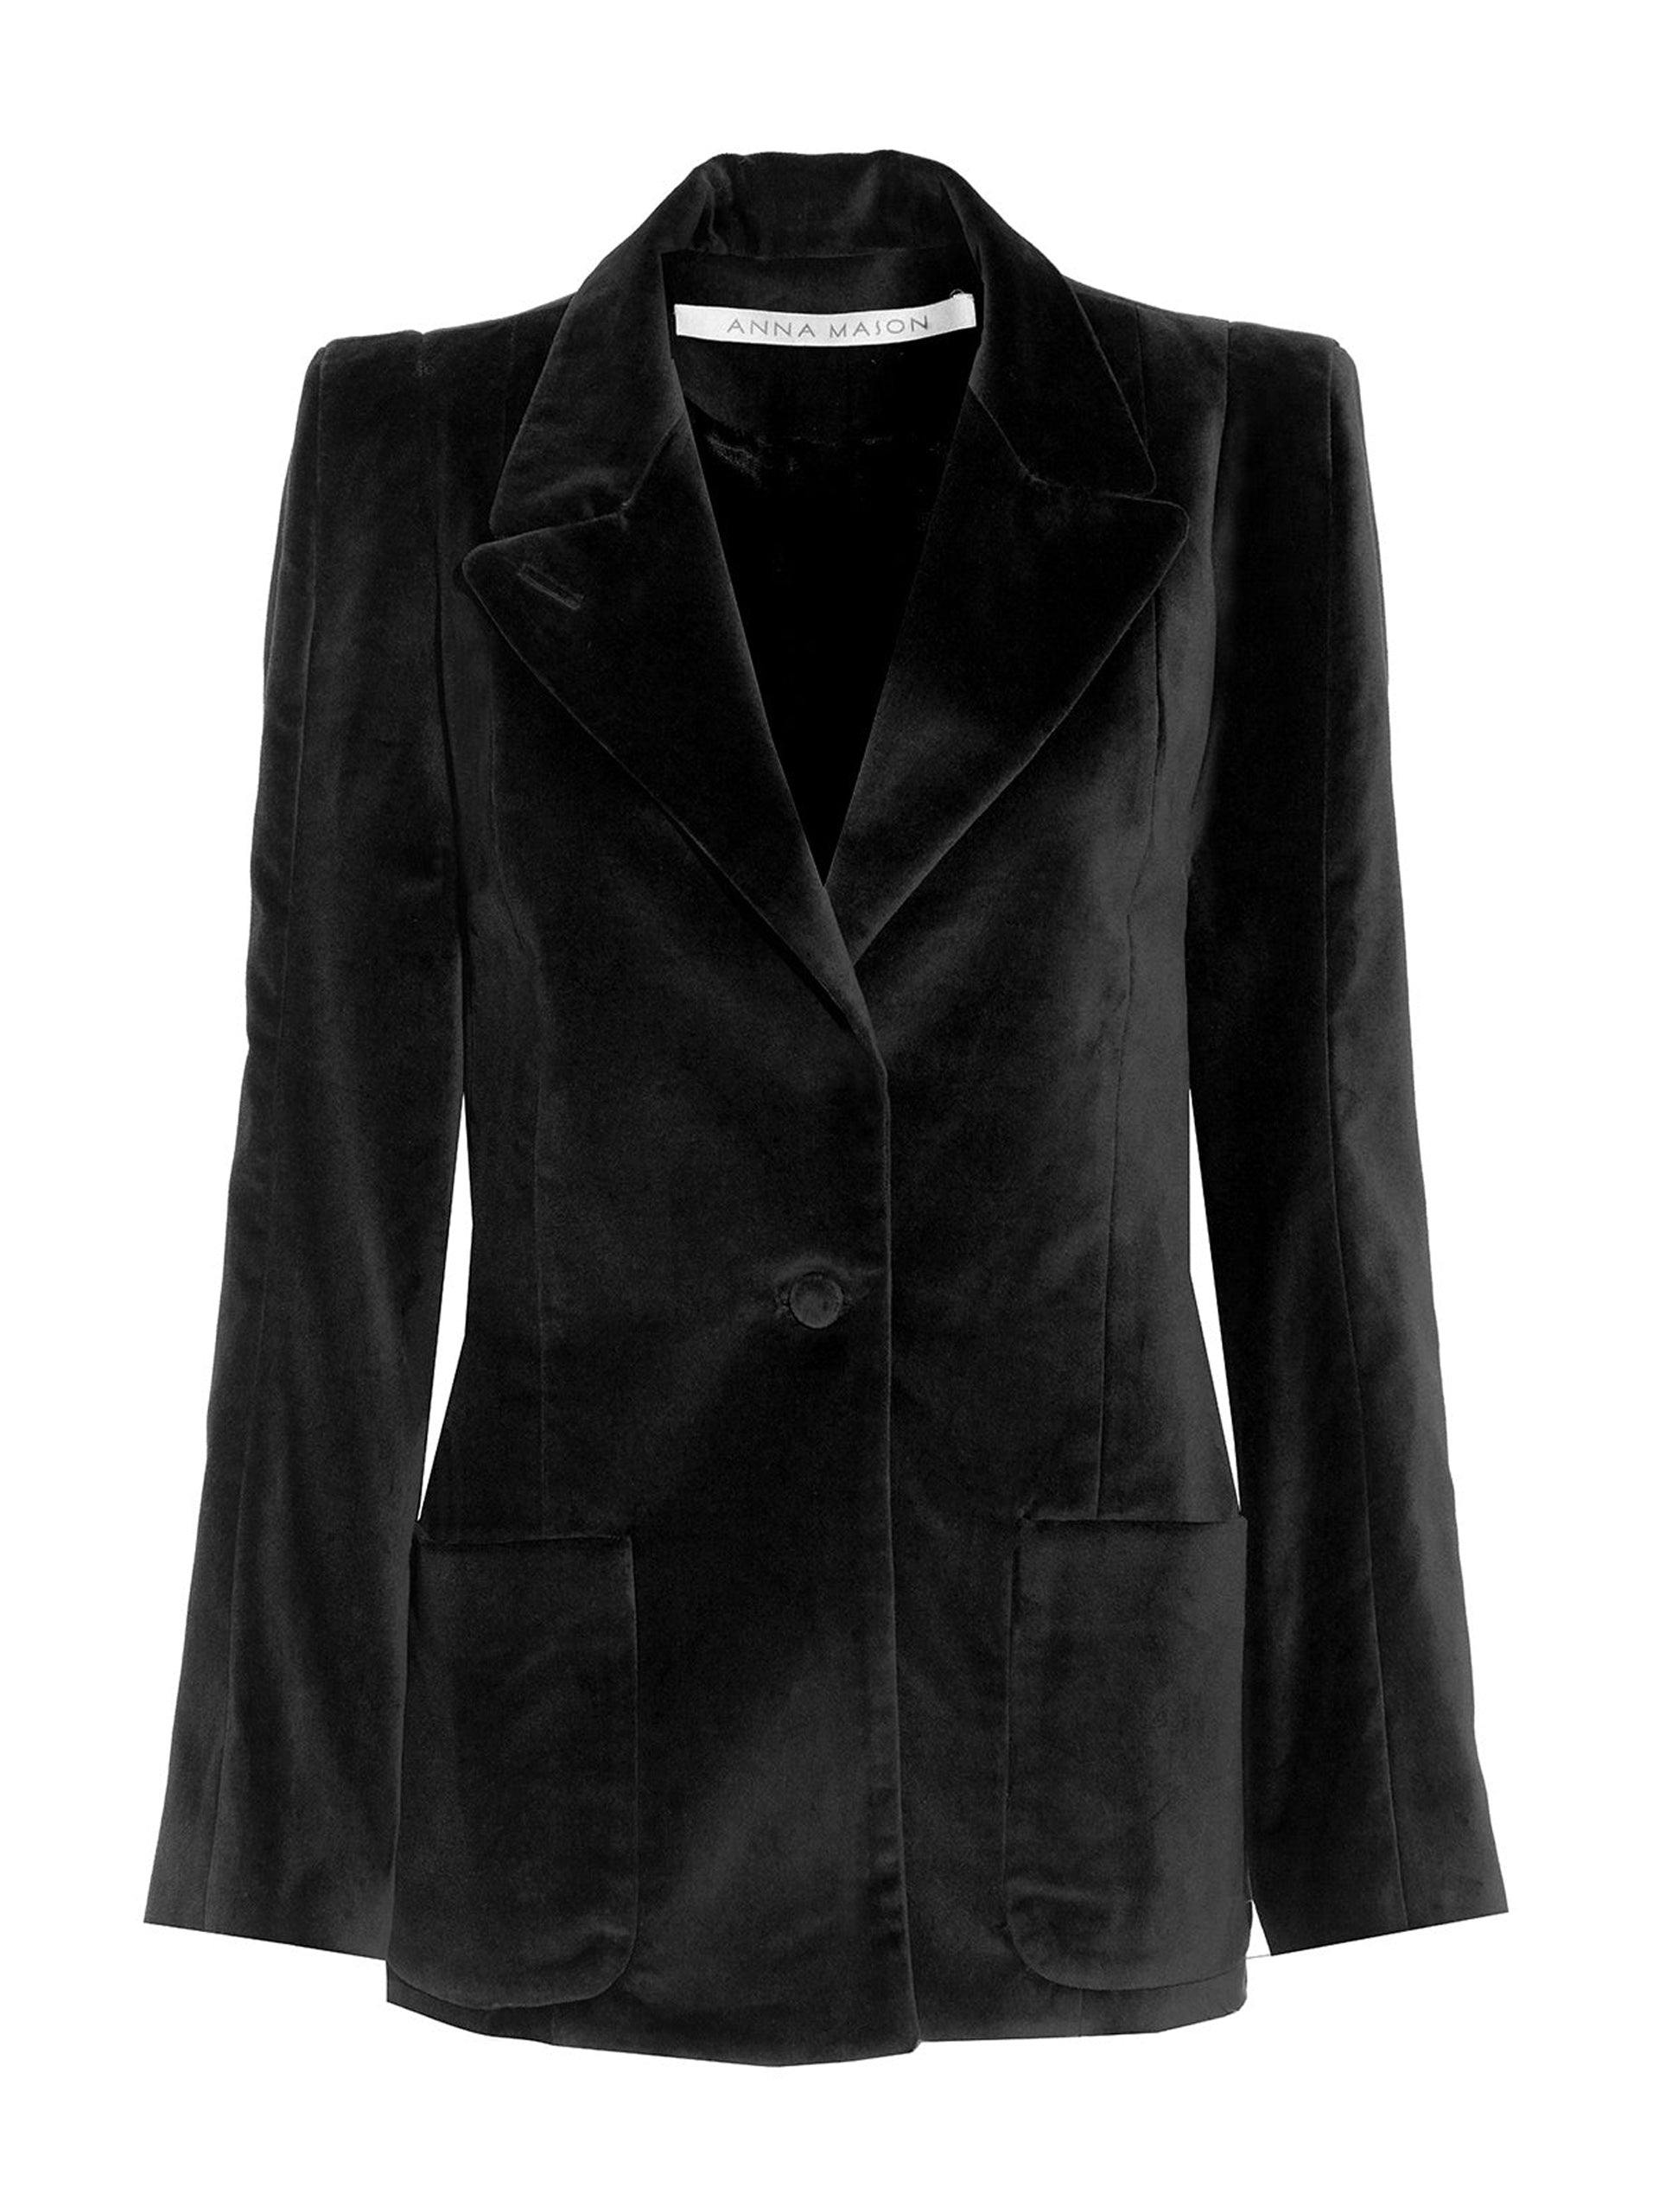 Black velvet Sharp jacket